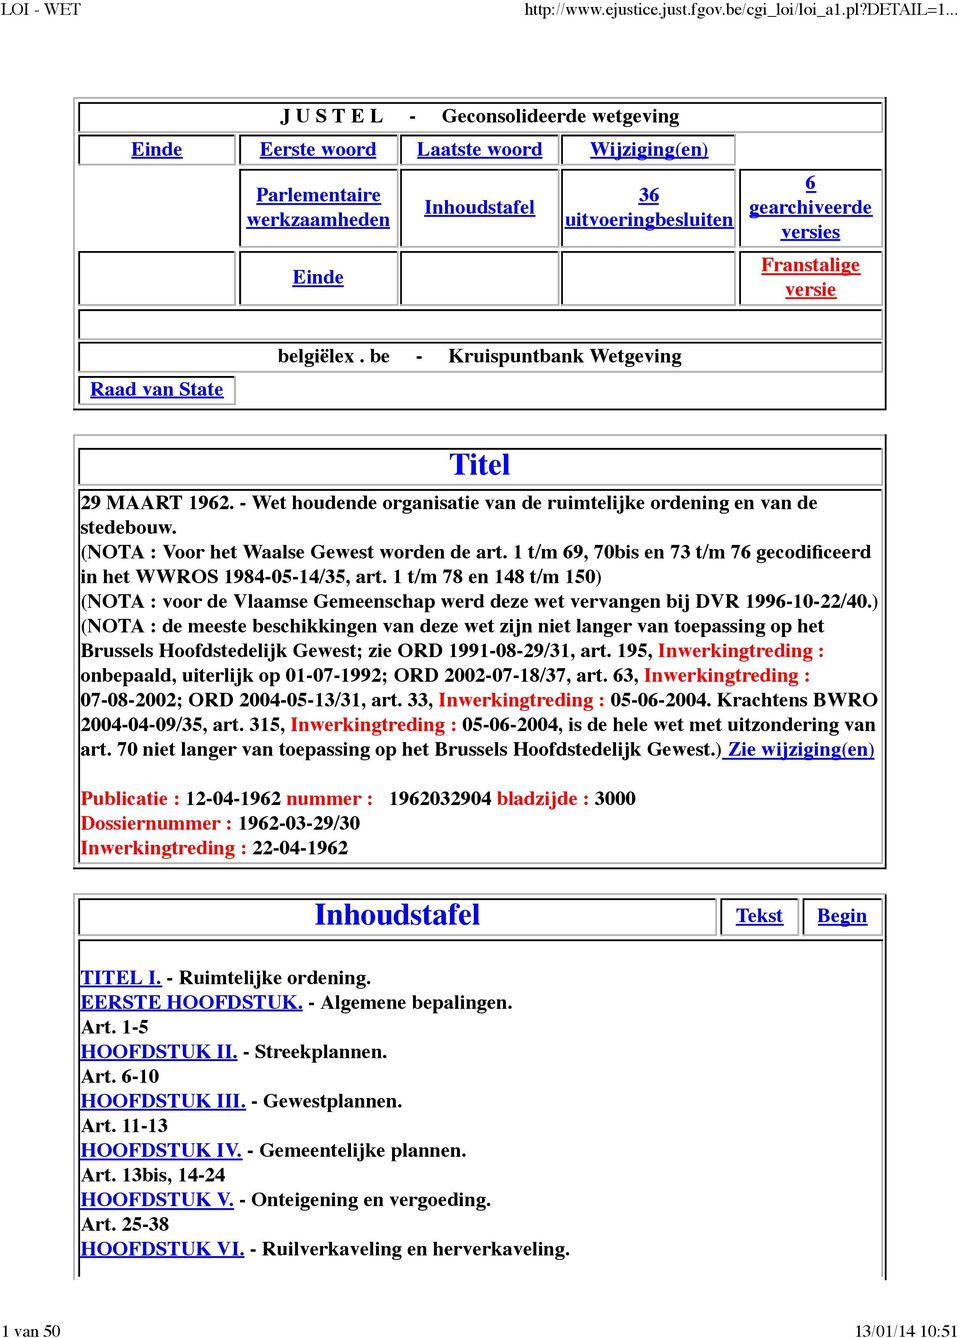 1 t/m 69, 70bis en 73 t/m 76 gecodificeerd in het WWROS 1984-05-14/35, art. 1 t/m 78 en 148 t/m 150) (NOTA : voor de Vlaamse Gemeenschap werd deze wet vervangen bij DVR 1996-10-22/40.